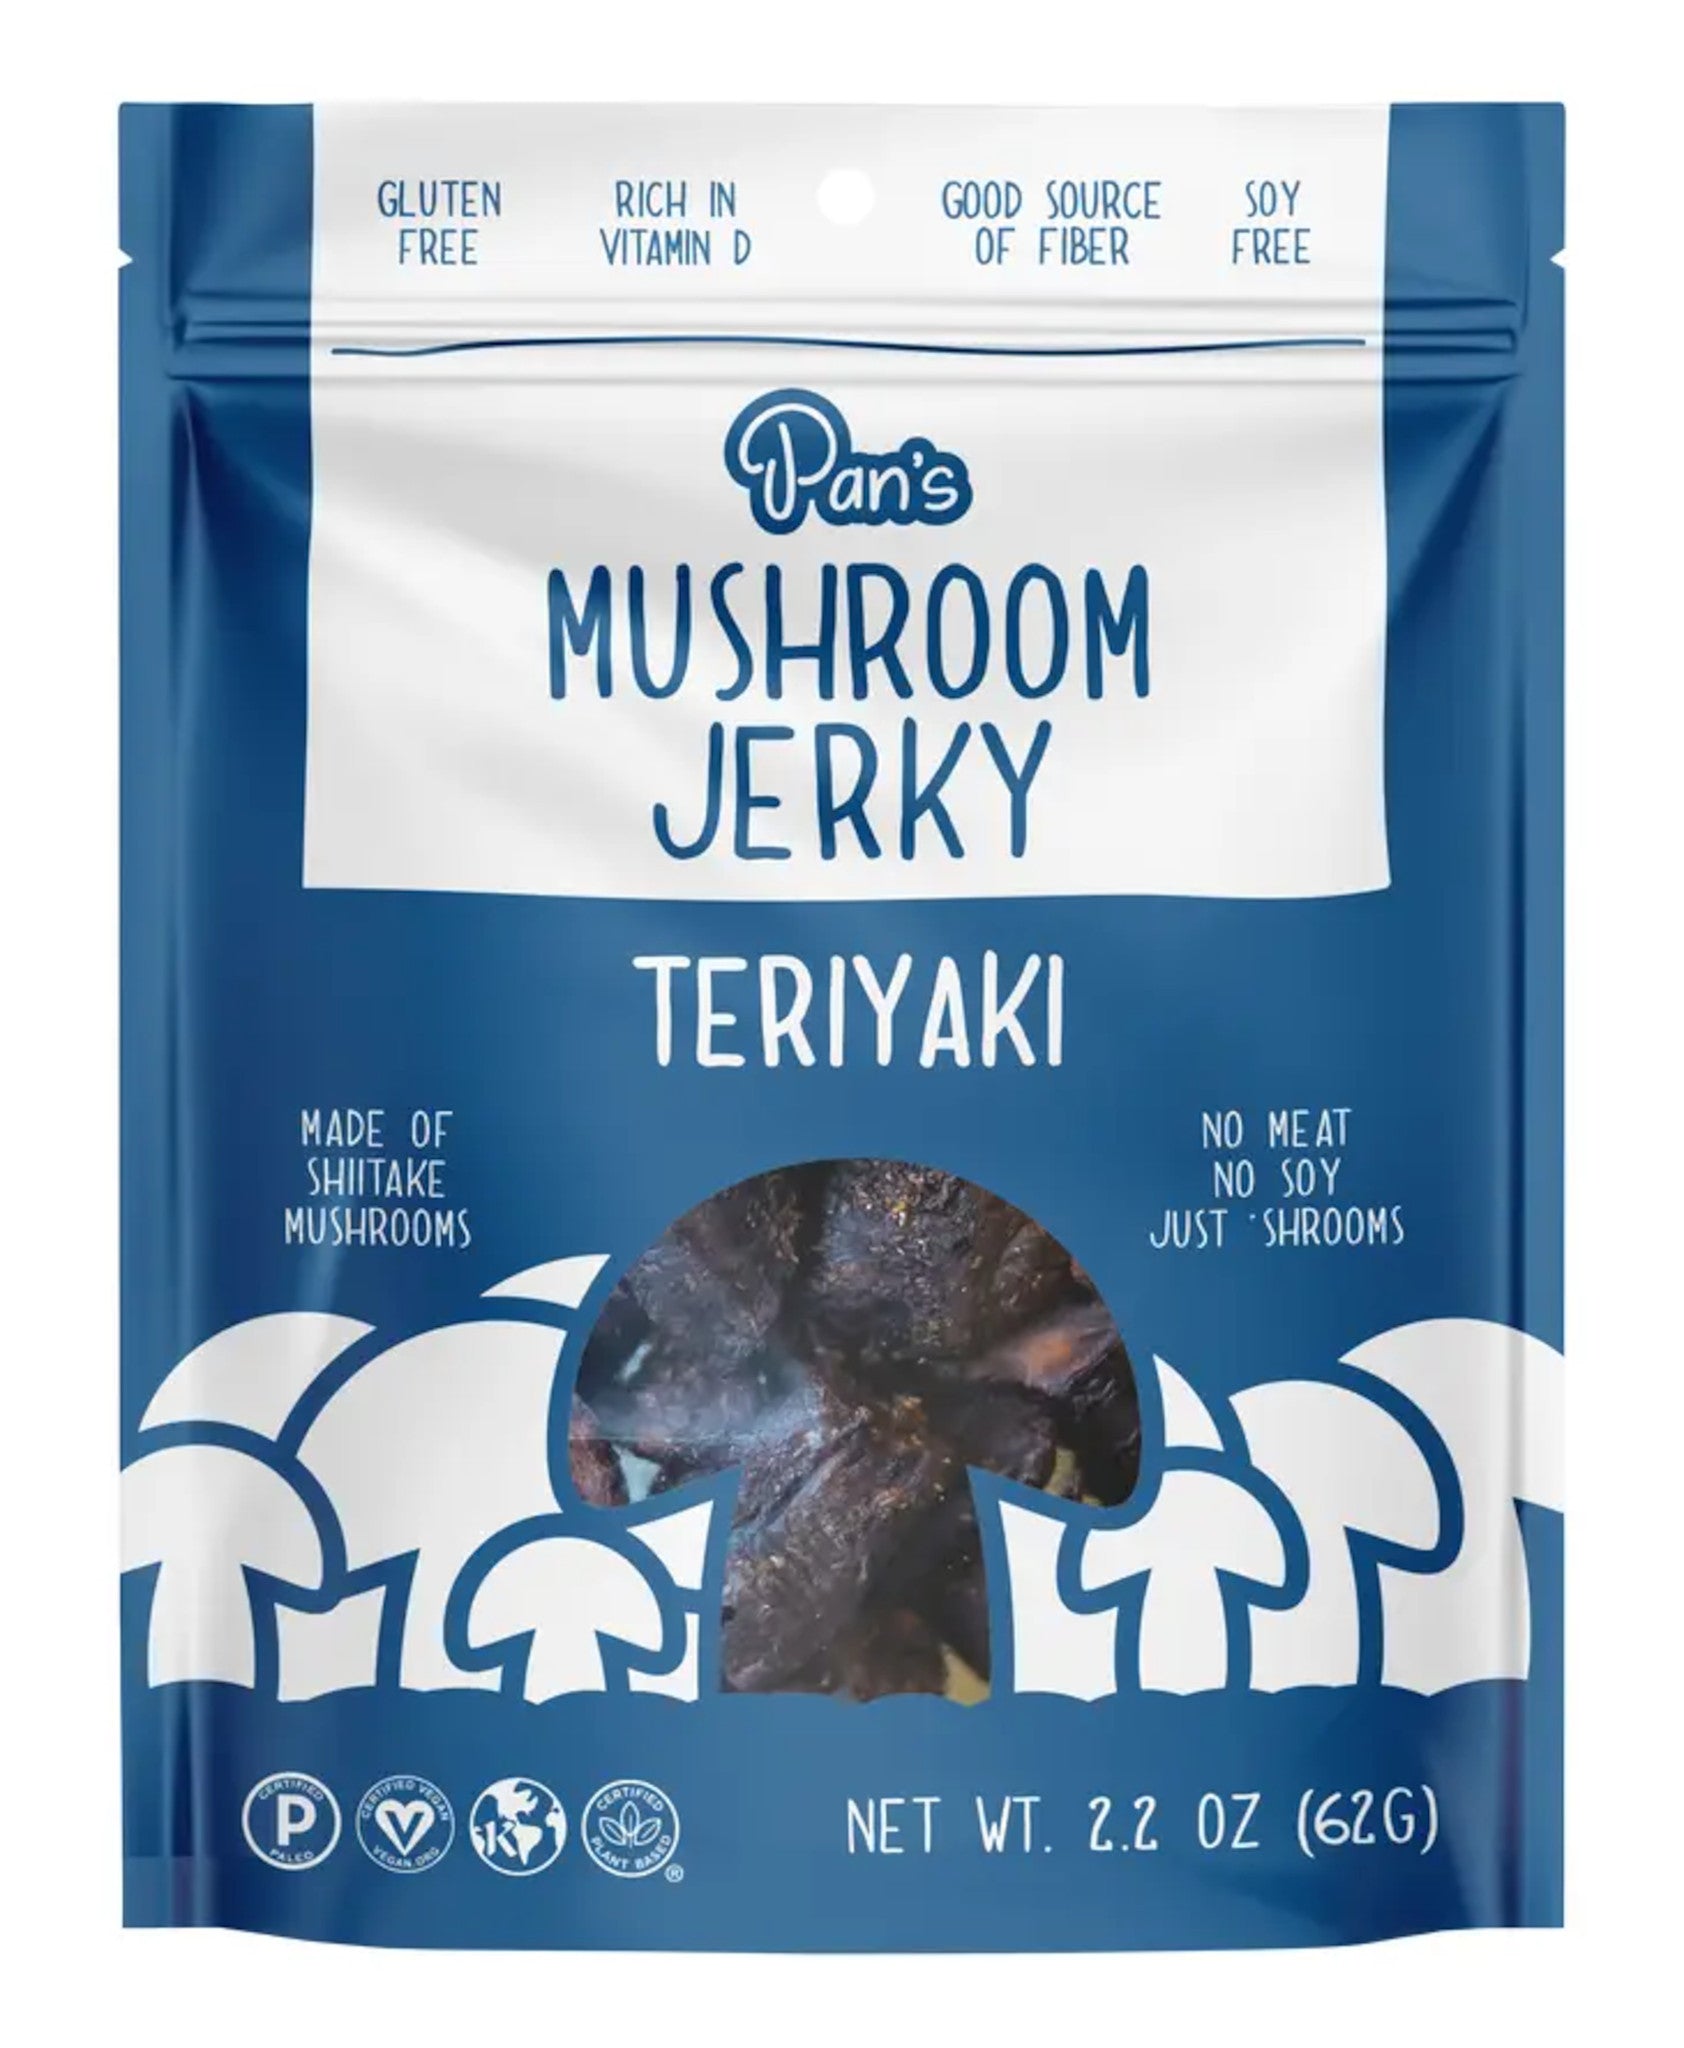 Teriayaki Mushroom Jerky